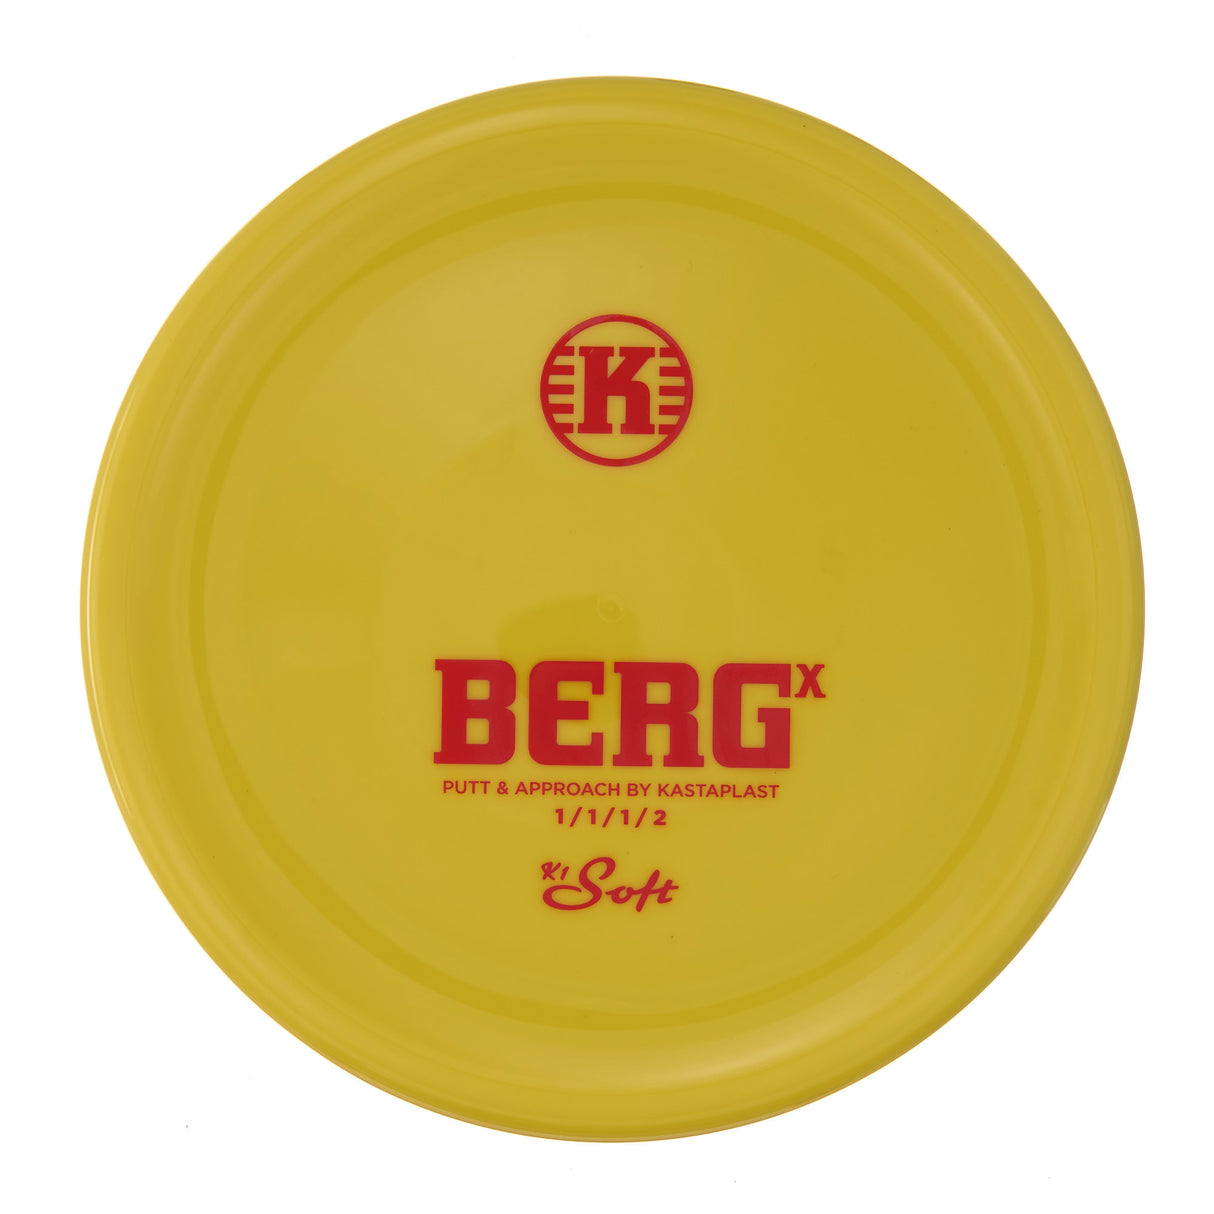 Kastaplast Berg X - K1 Soft 176g | Style 0006